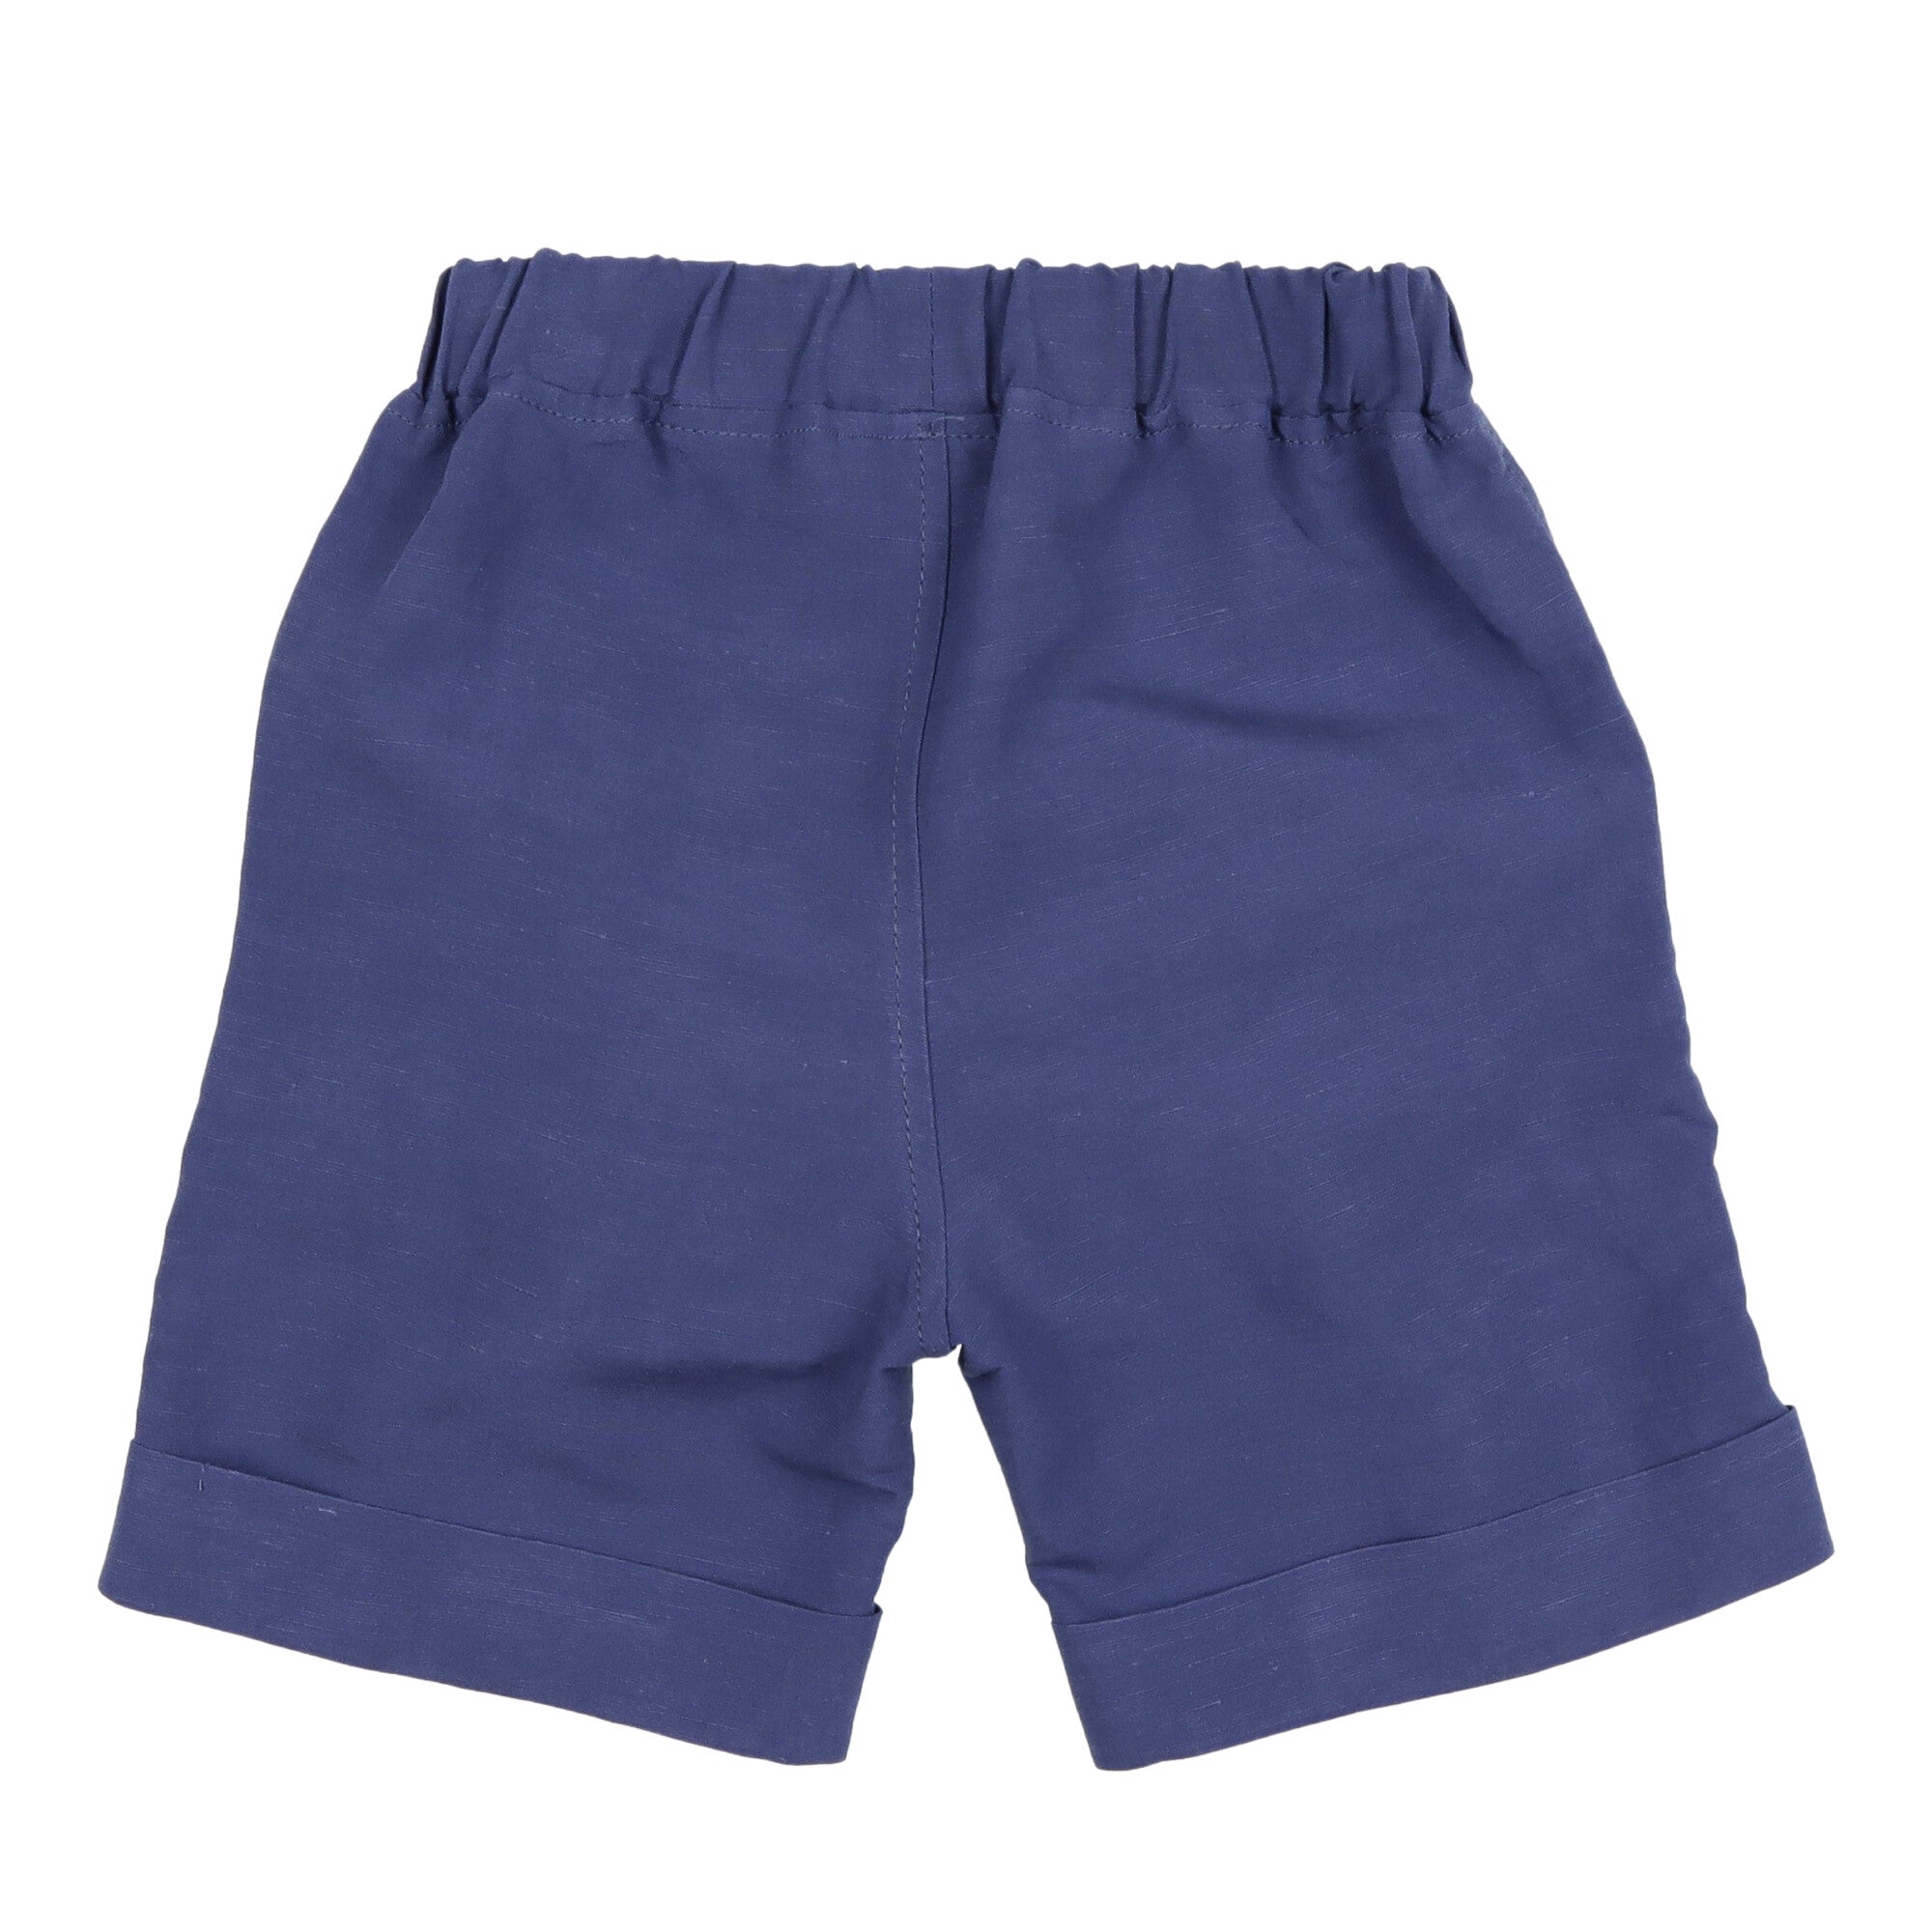 pantalone-corto-bambino-blu/18 mesi